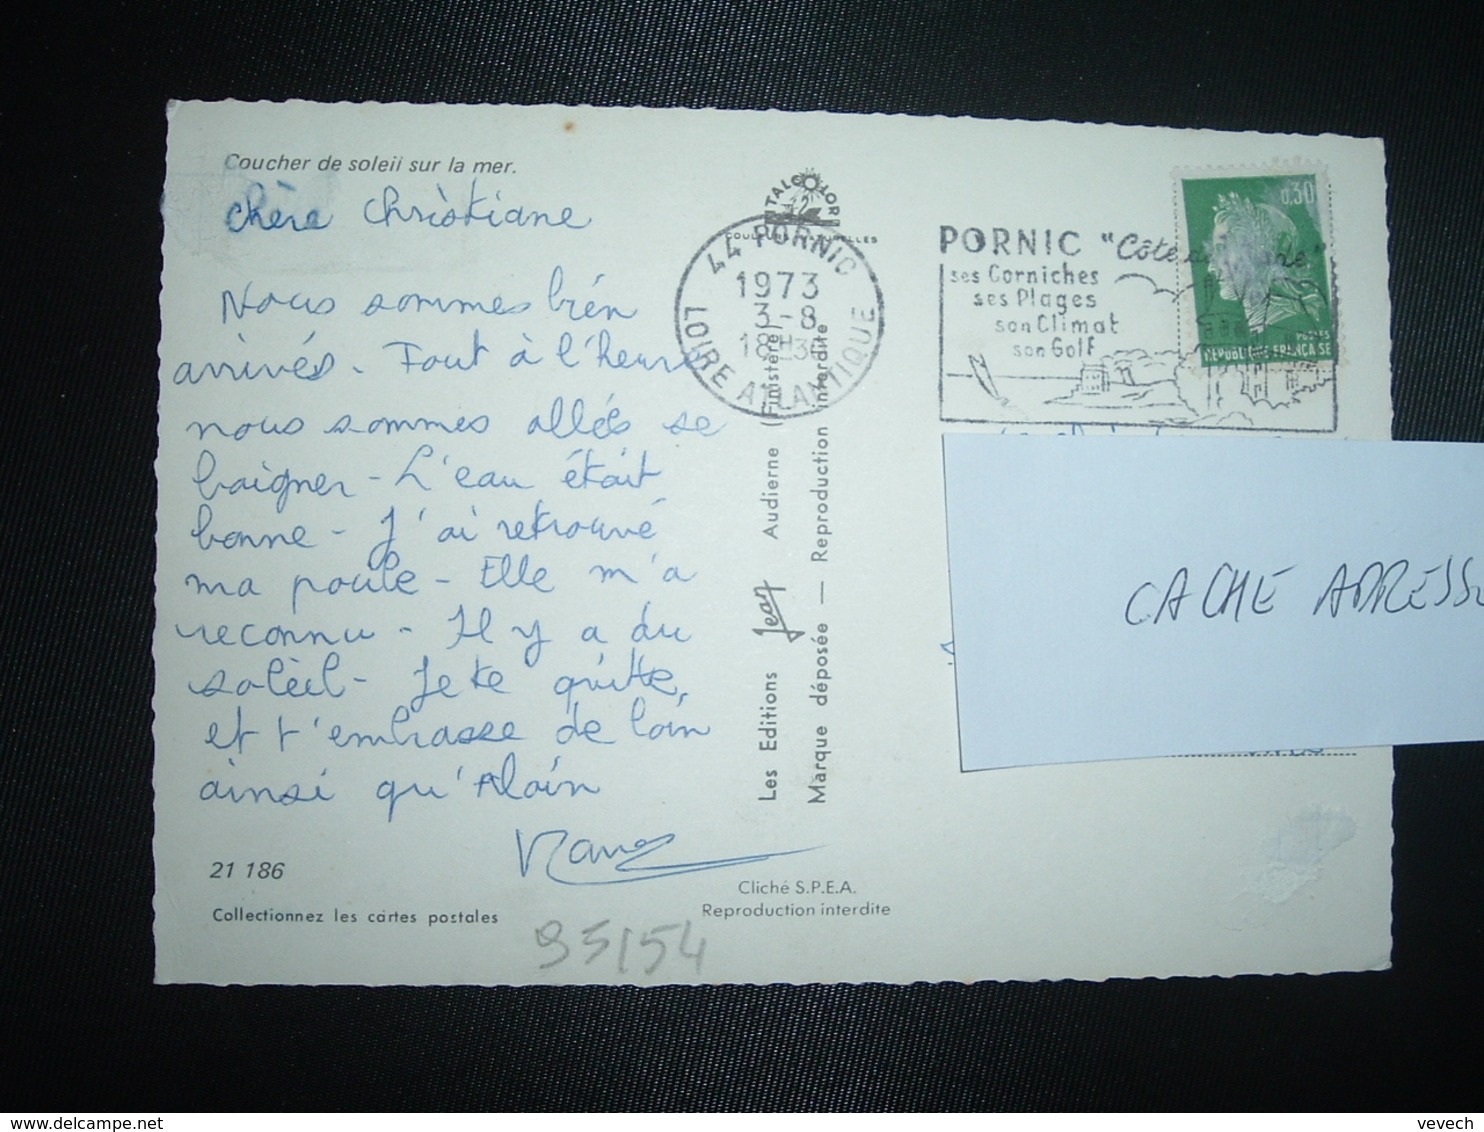 CP TP M. DE CHEFFER 0,30 OBL.MEC. VARIETE 3-8 1973 44 PORNIC LOIRE ATLANTIQUE Ses Corniches Ses Plages Son Climat Son Go - Mechanical Postmarks (Advertisement)